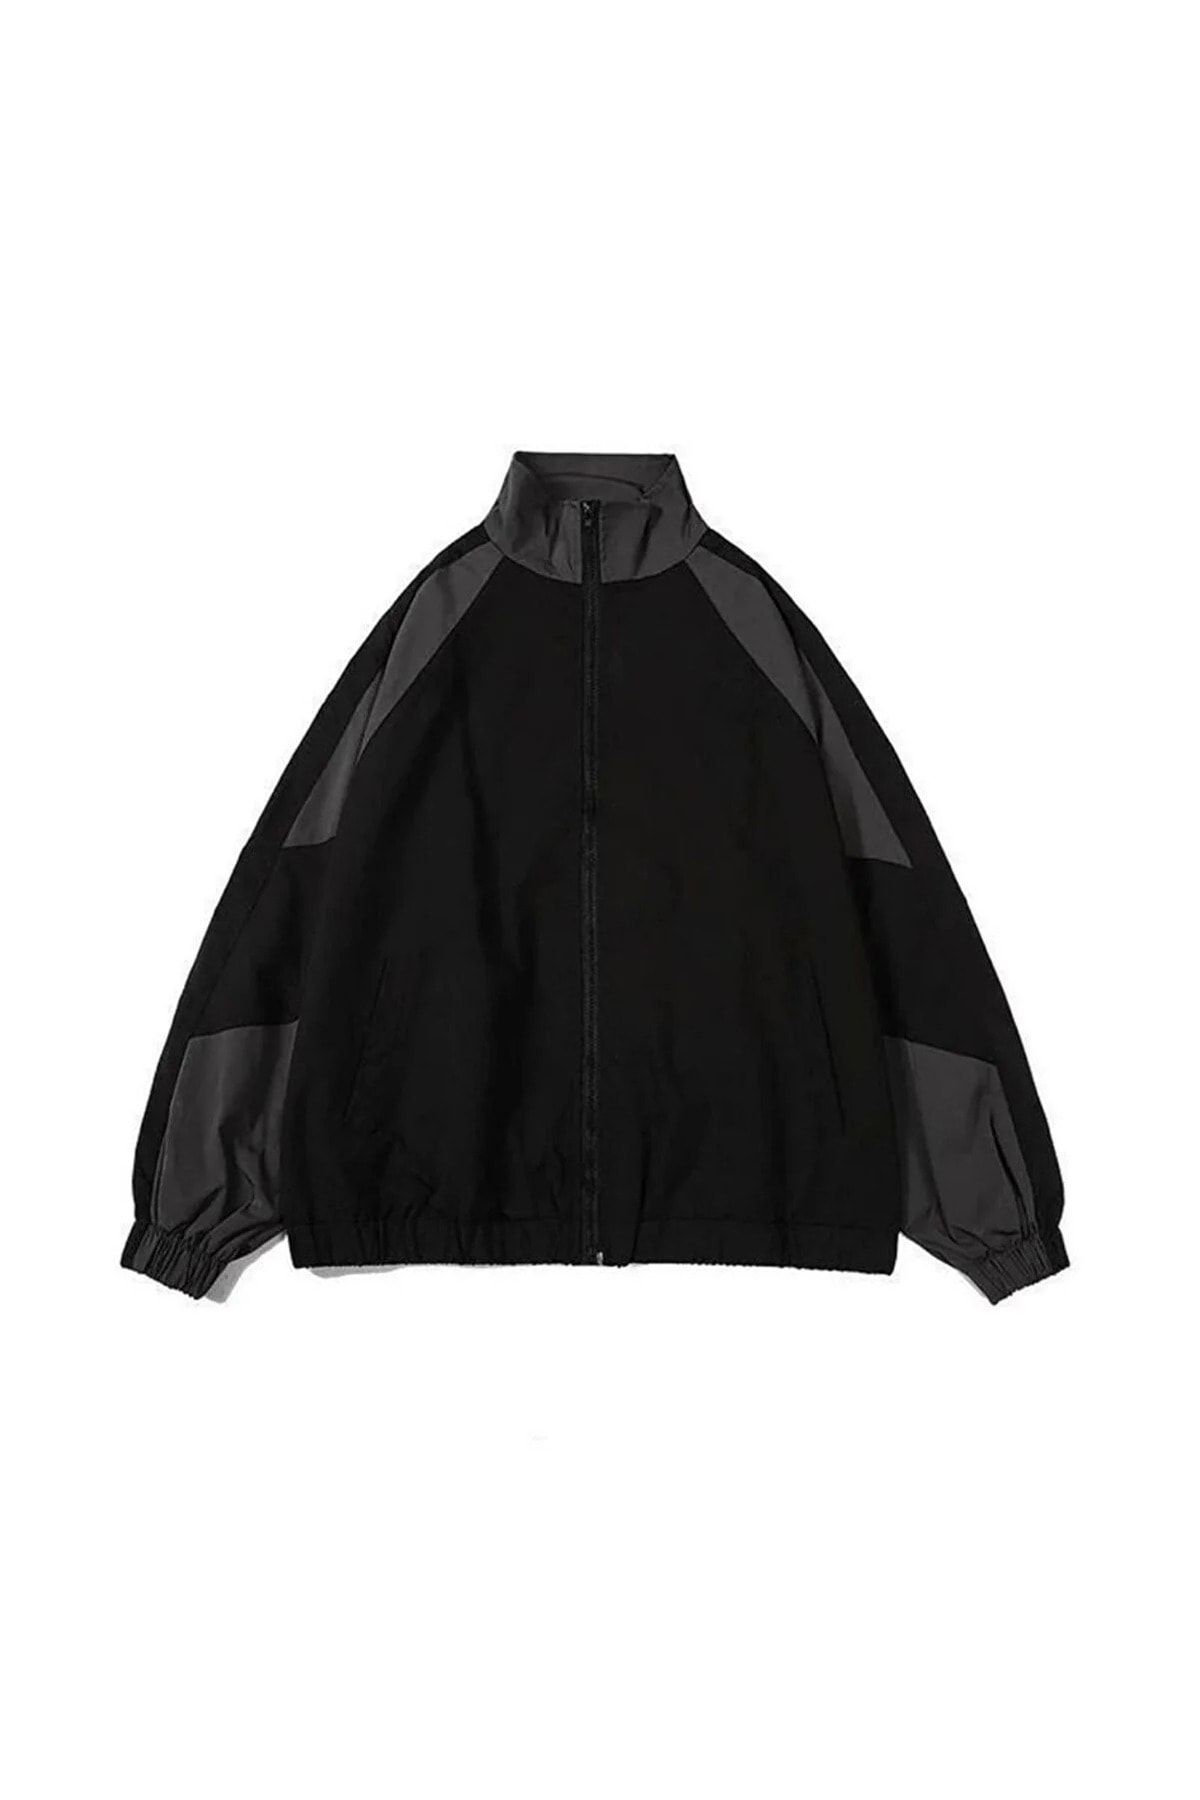 Gofeel Yağmurluk Ceket Paraşüt Kumaş Unisex Oversize Bol Kalıp Siyah-Gri Renkli